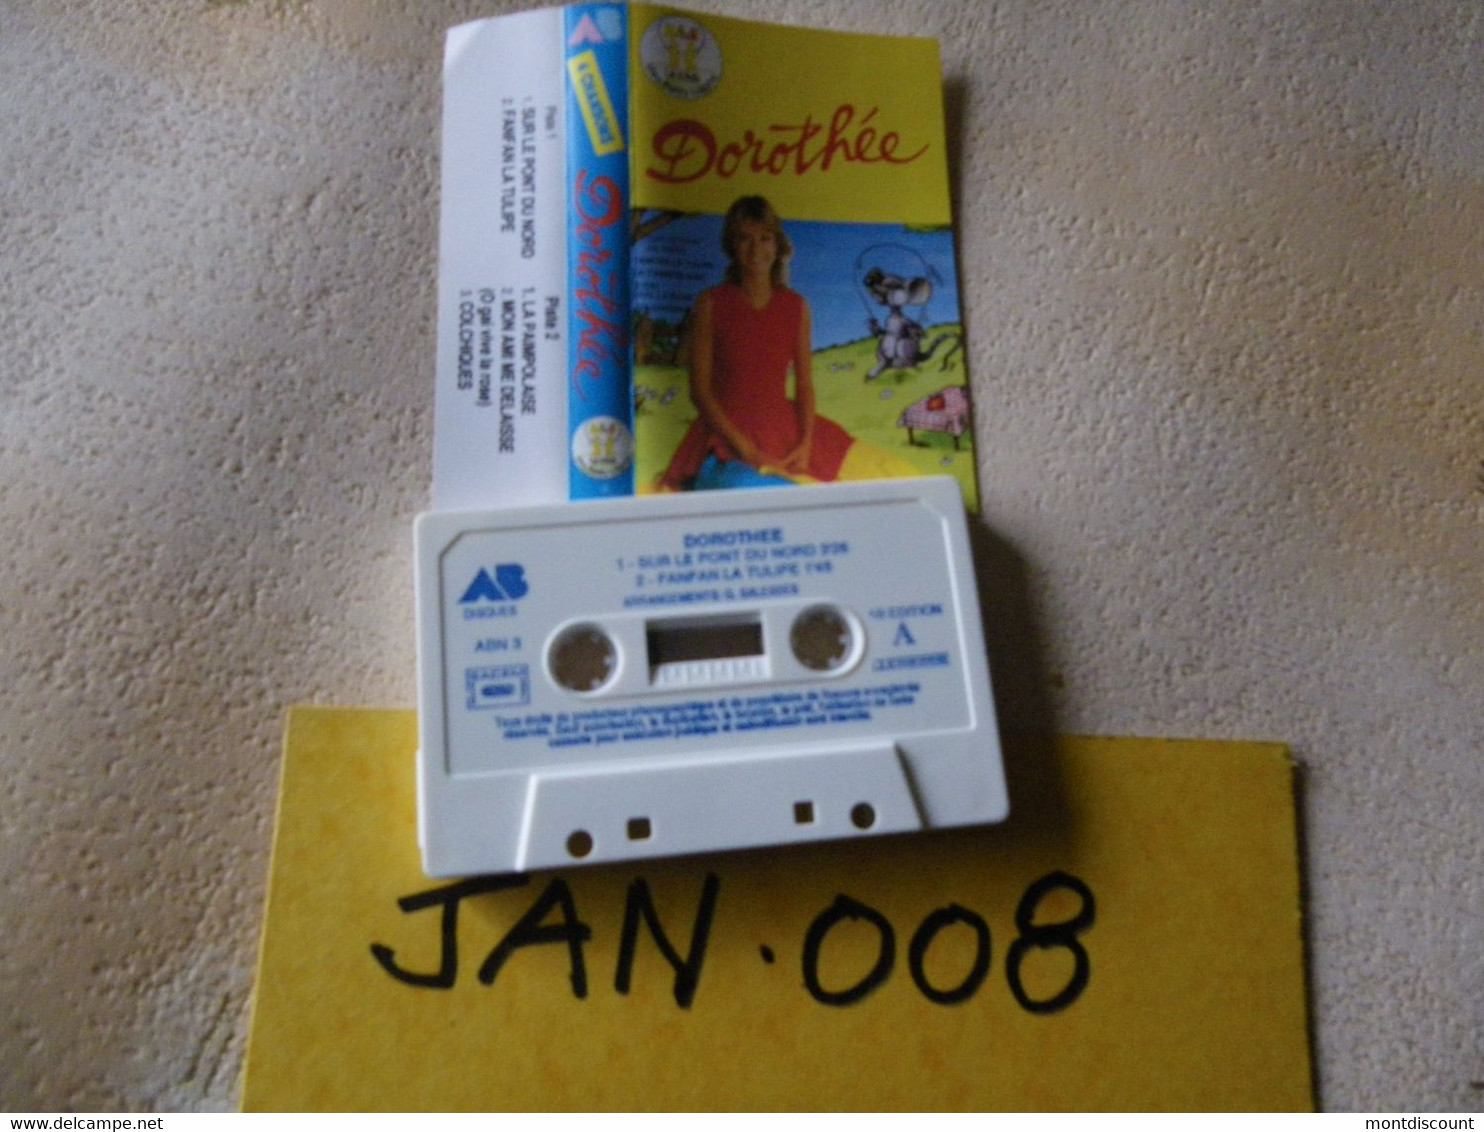 DOROTHEE (Dorothée) K7 AUDIO VOIR PHOTO...ET REGARDEZ LES AUTRES (PLUSIEURS) (JAN 008) - Cassettes Audio